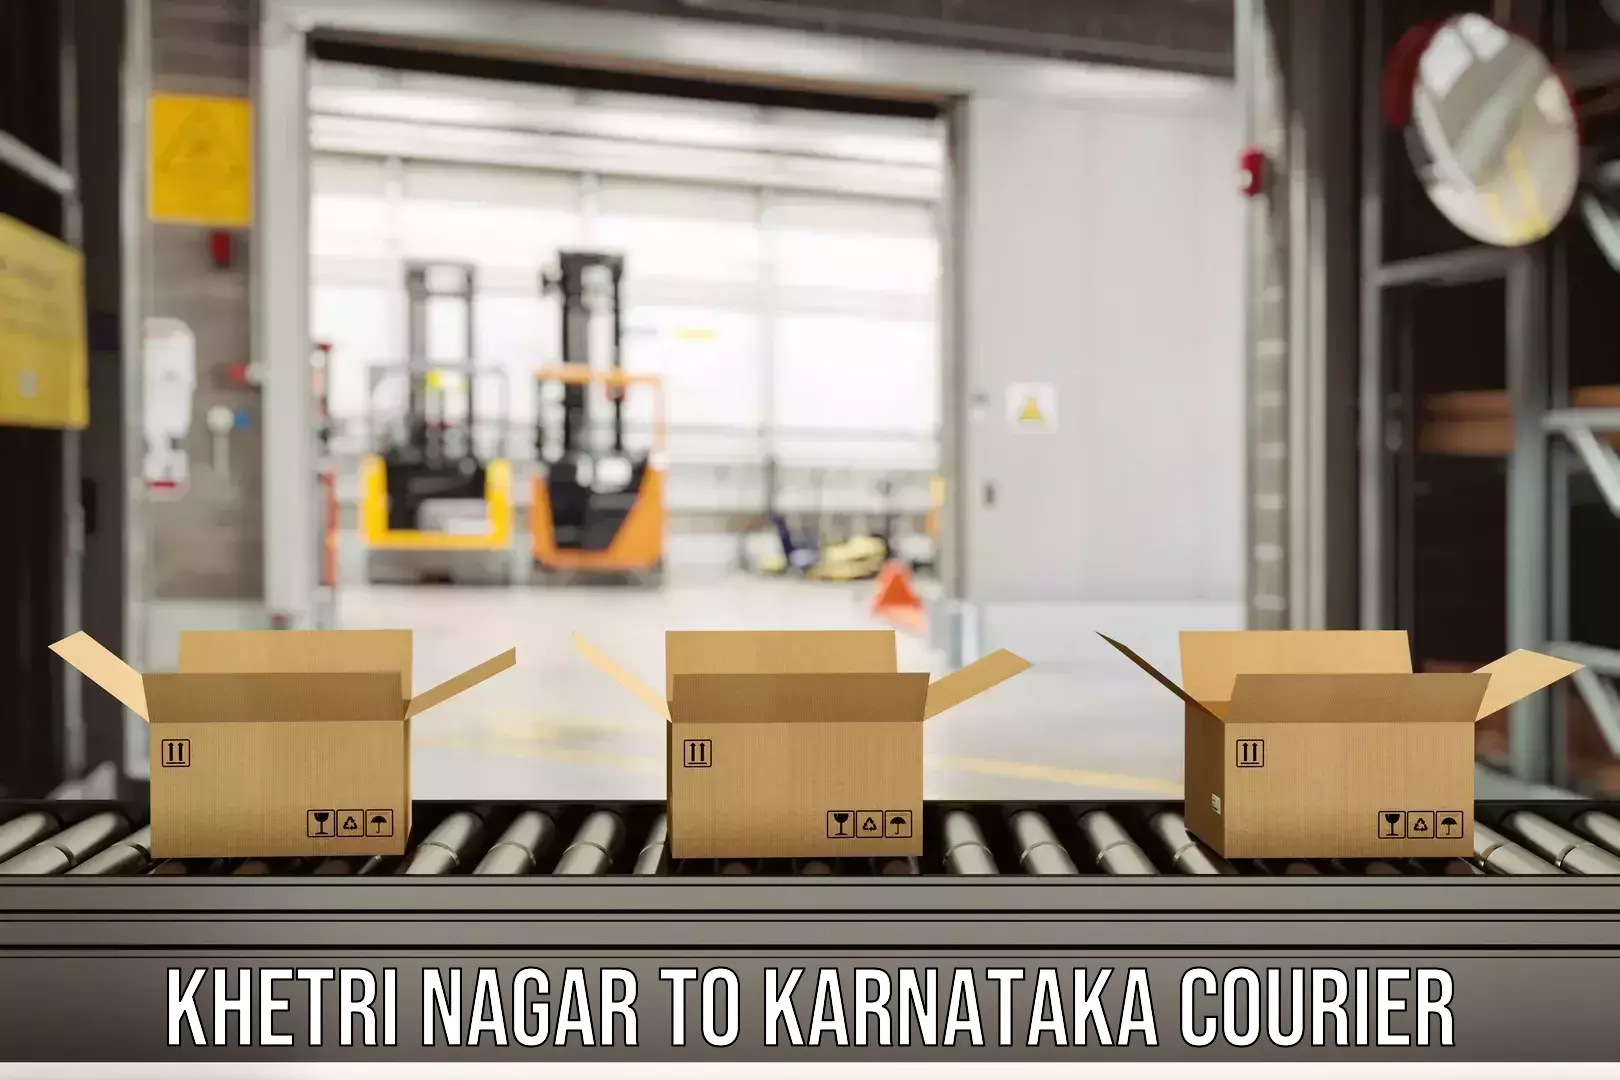 Budget-friendly shipping Khetri Nagar to Srirangapatna